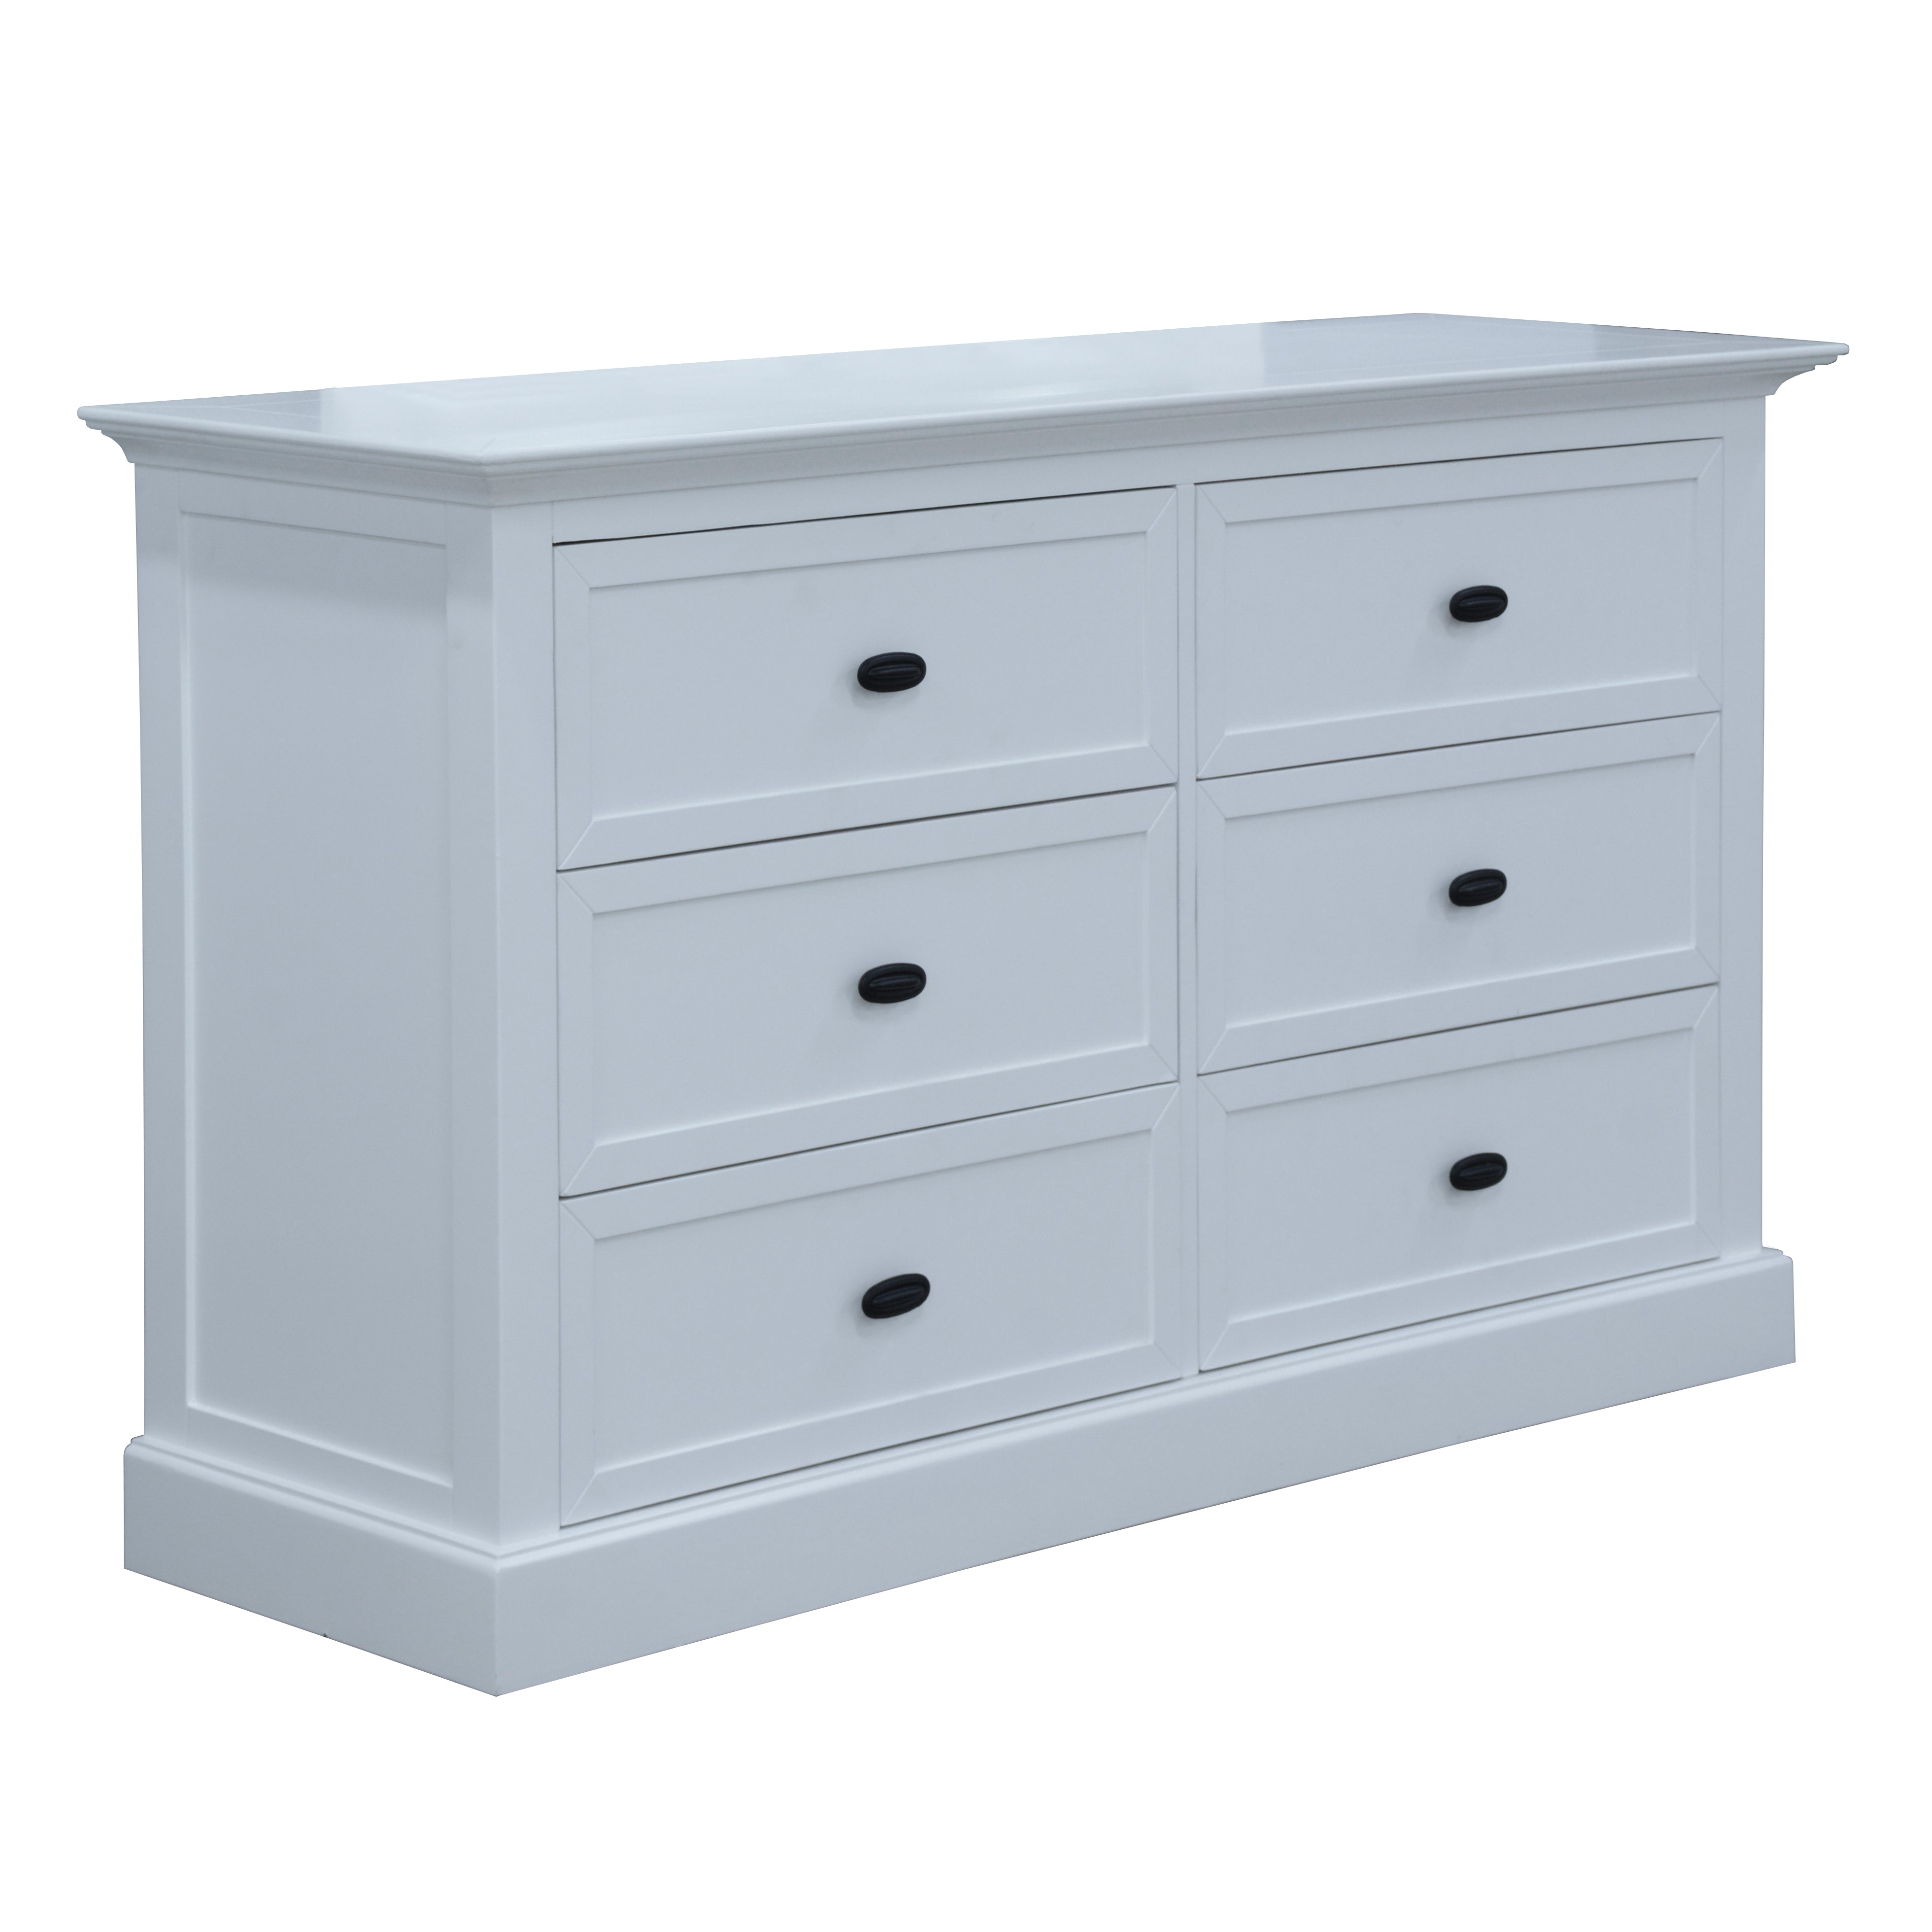 Beechworth Dresser Mirror 6 Chest of Drawers Pine Wood Storage Cabinet - White